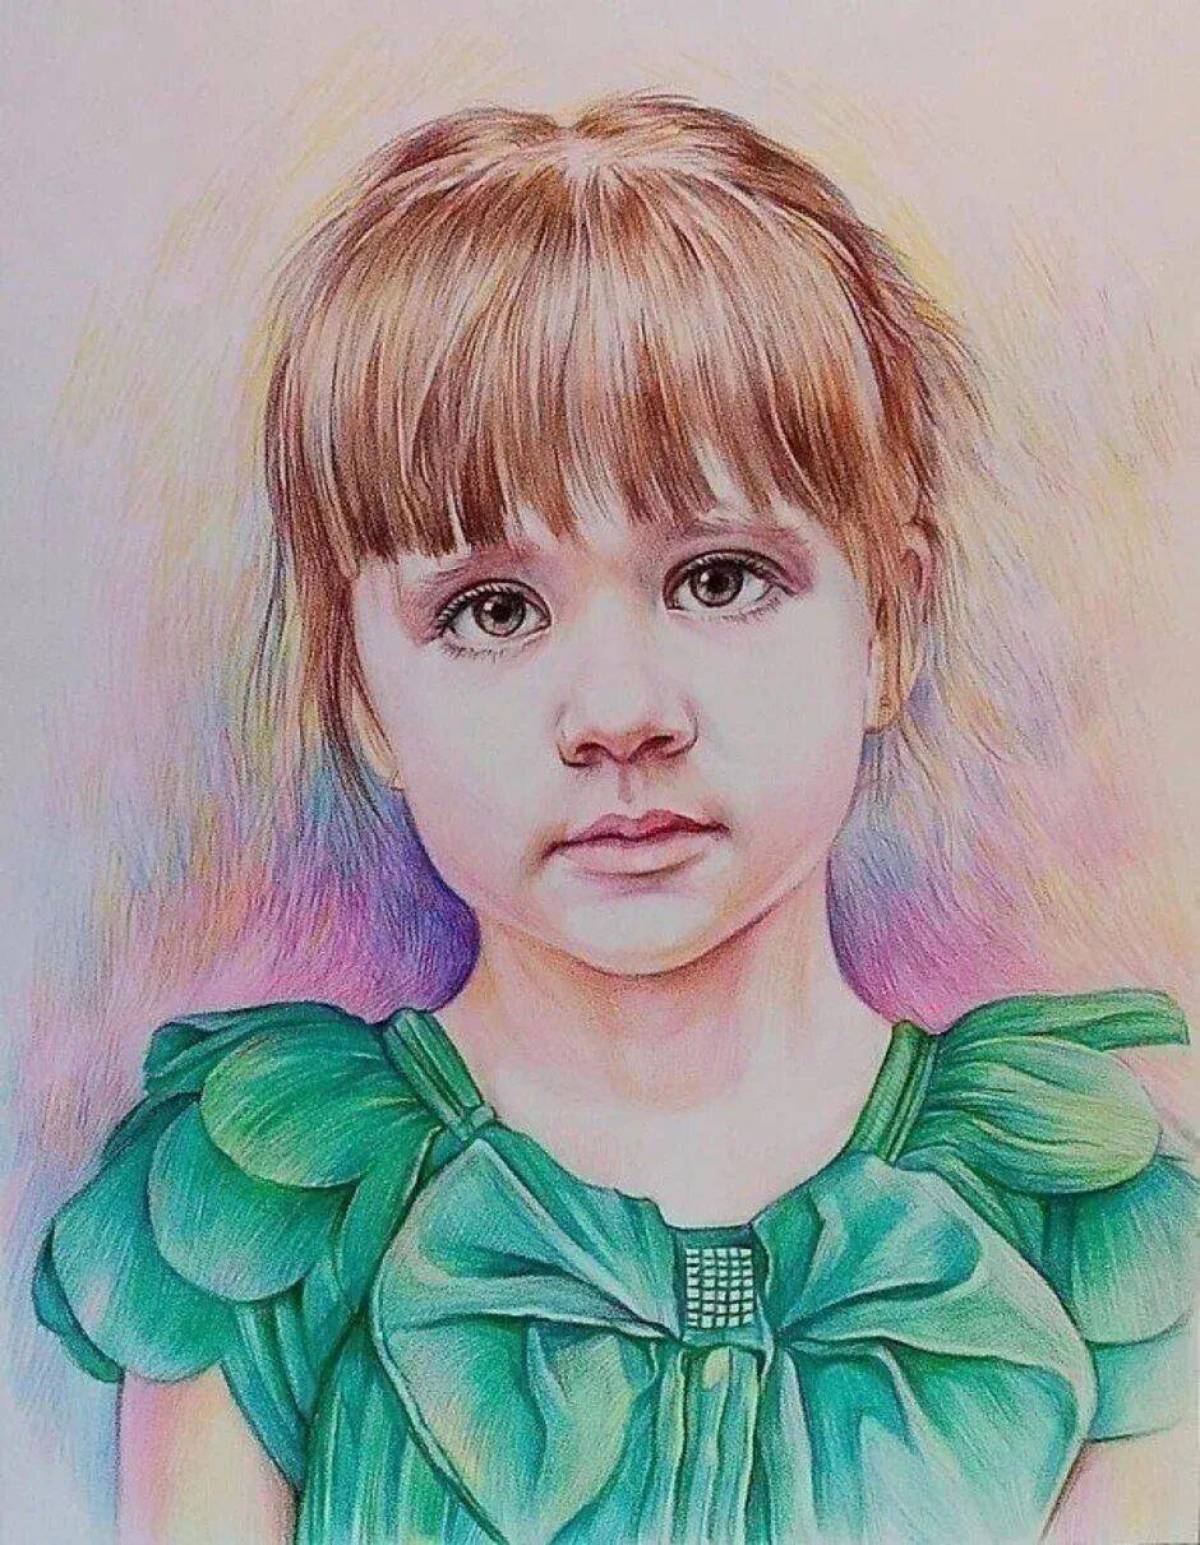 Портрет человека ребенку. Портрет девочки. Портрет ребенка. Цветной портрет. Портретный рисунок.